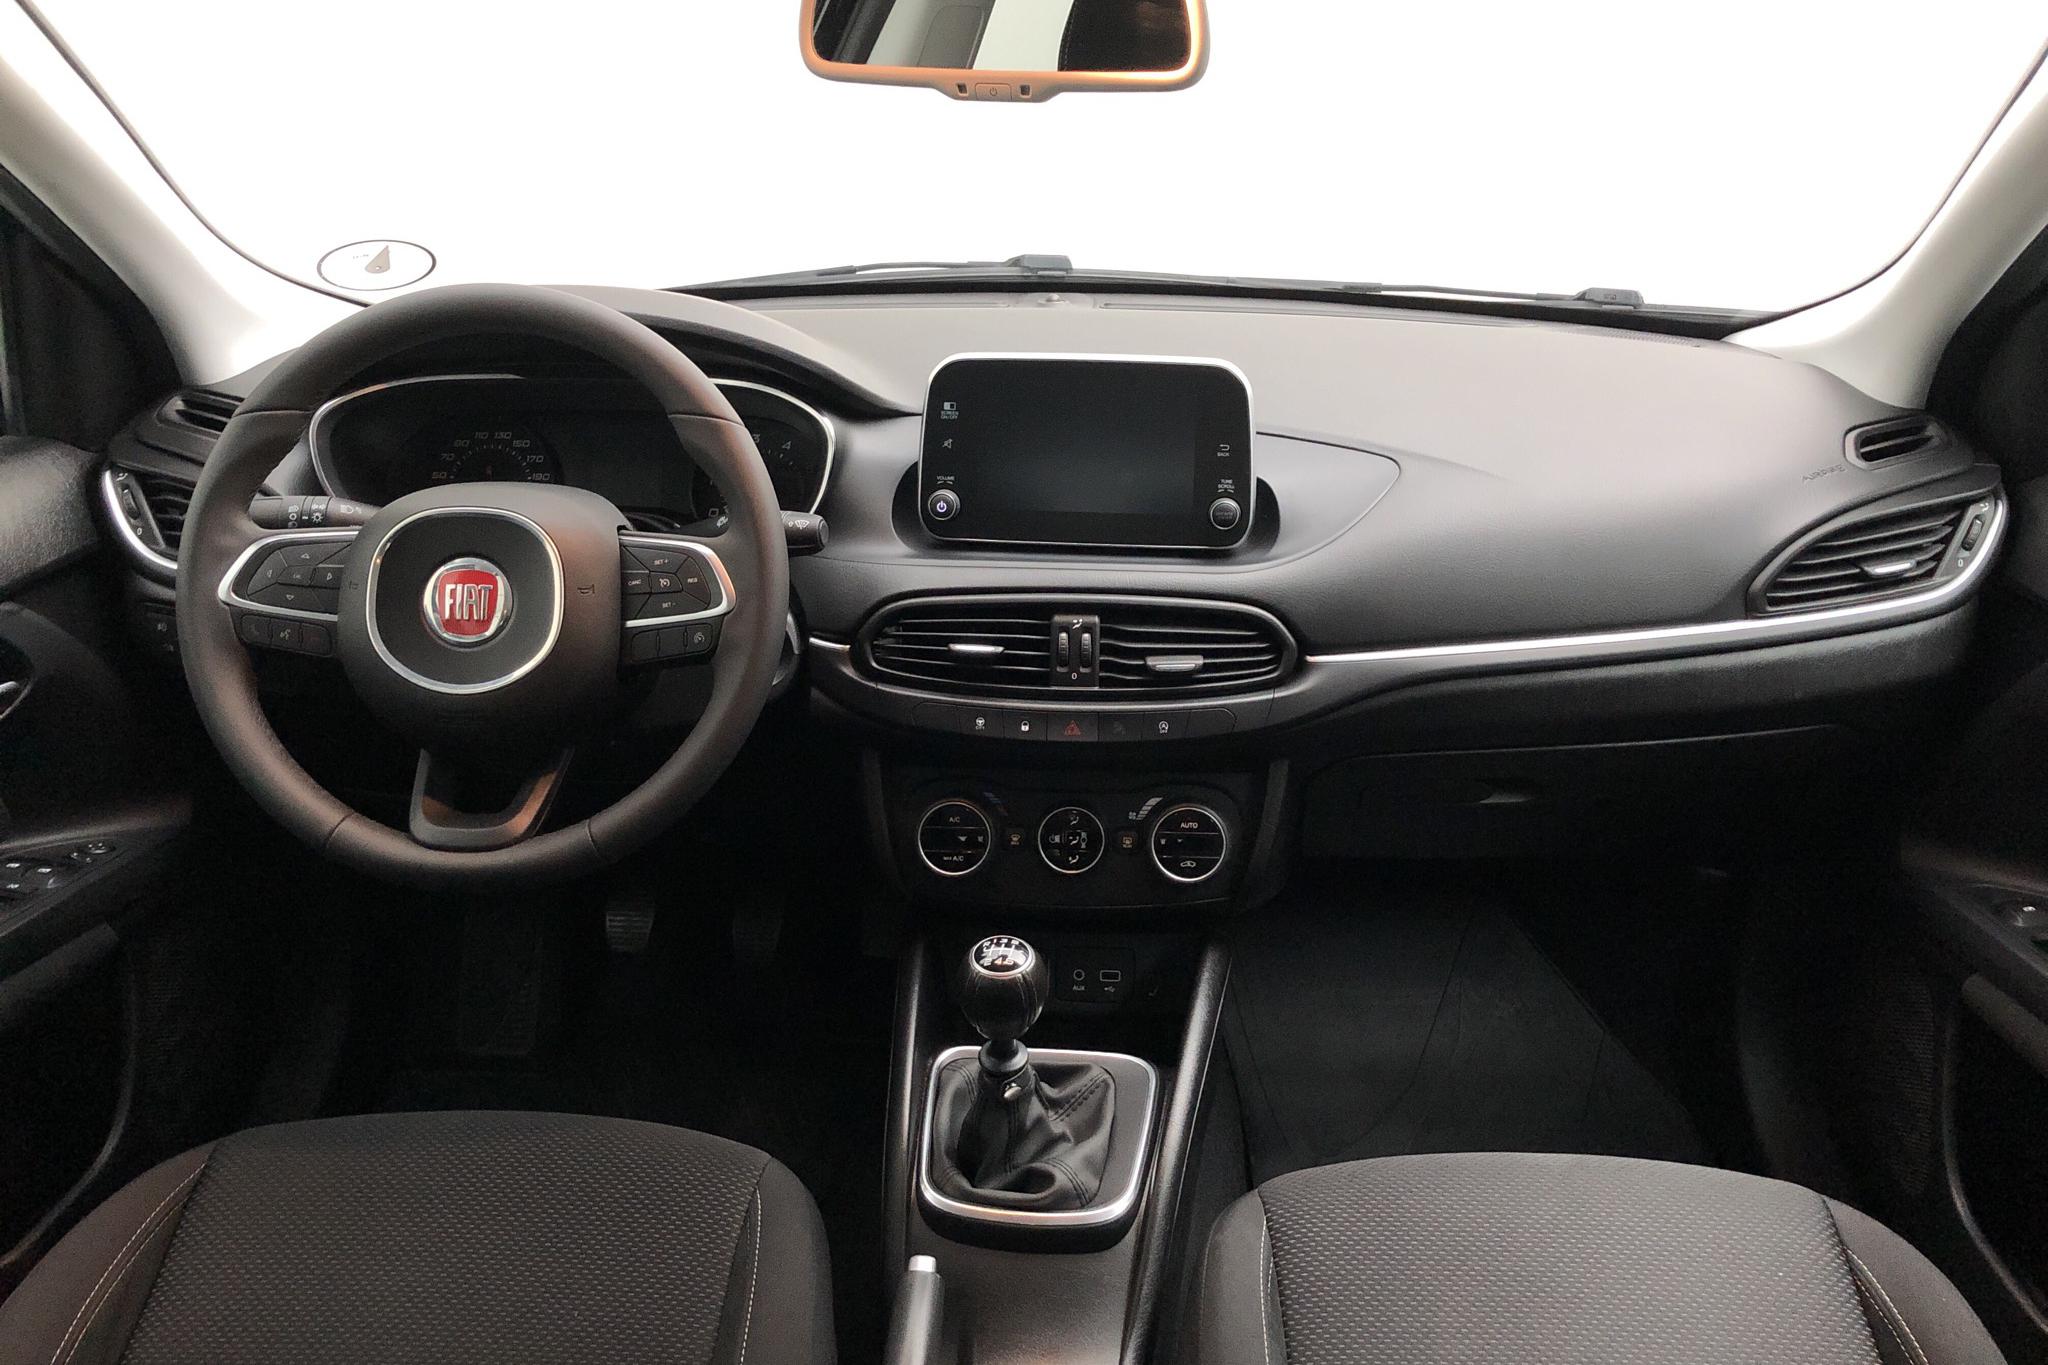 Fiat Tipo 1.6 5dr (120hk) - 43 310 km - Manual - black - 2017